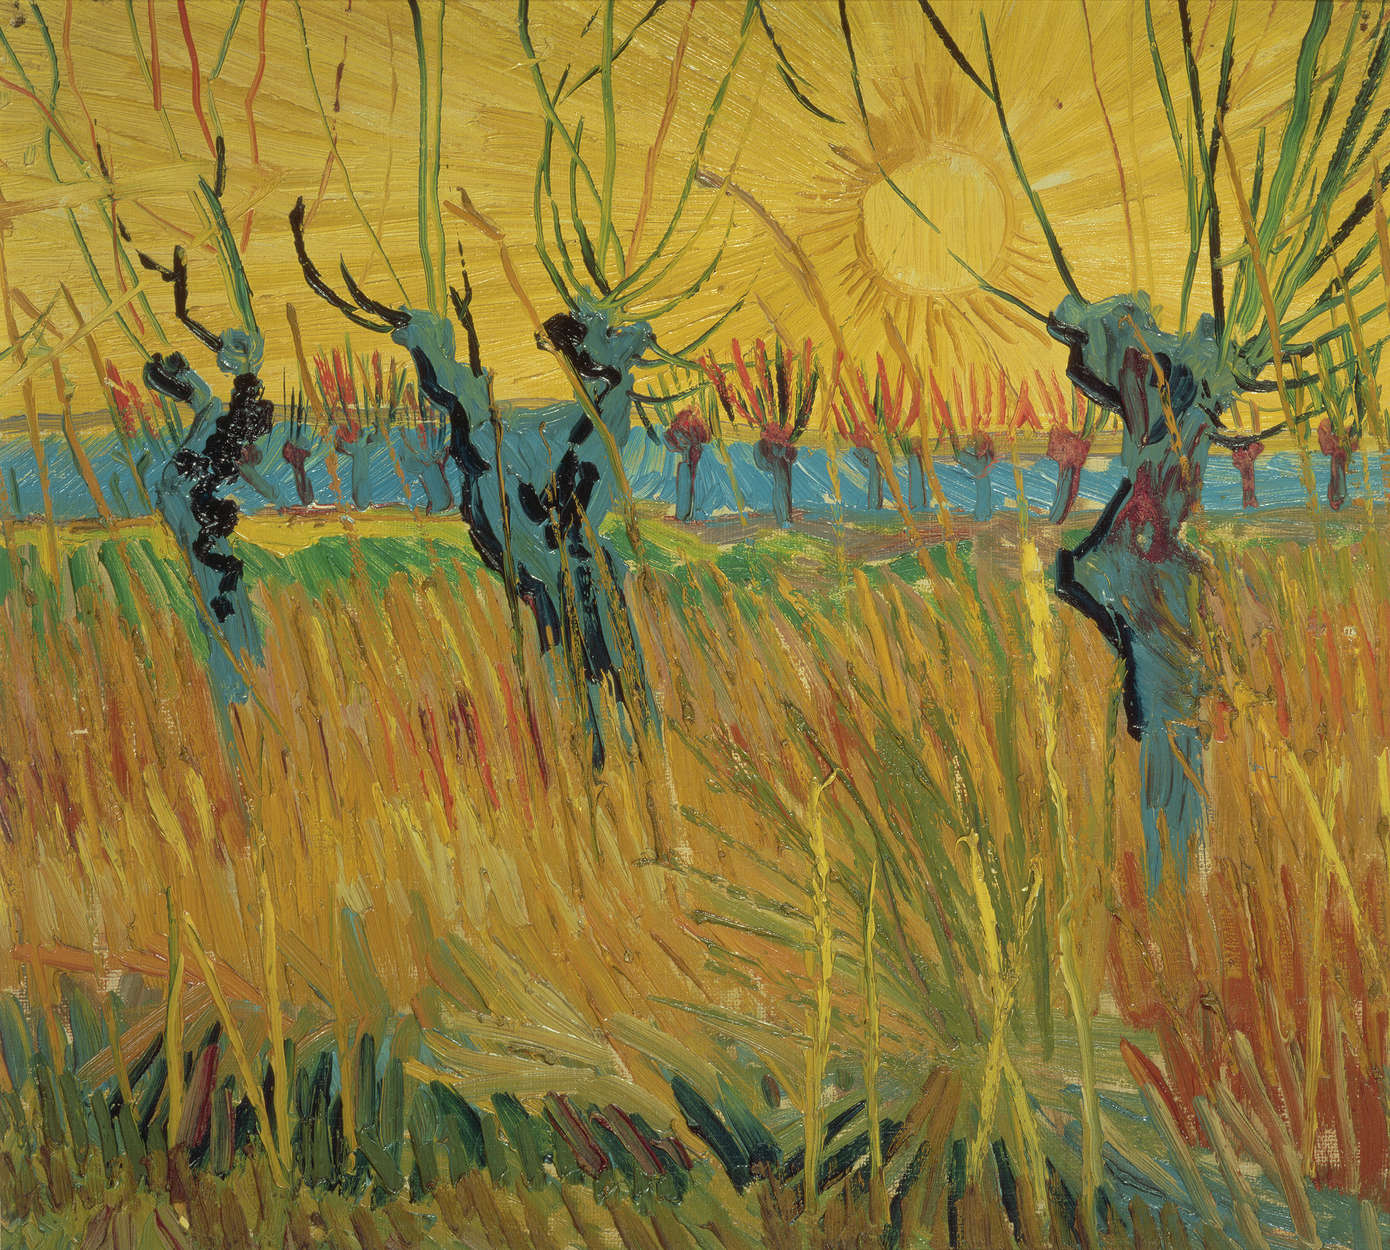             Fotomurali di Vincent van Gogh "Salici al tramonto
        